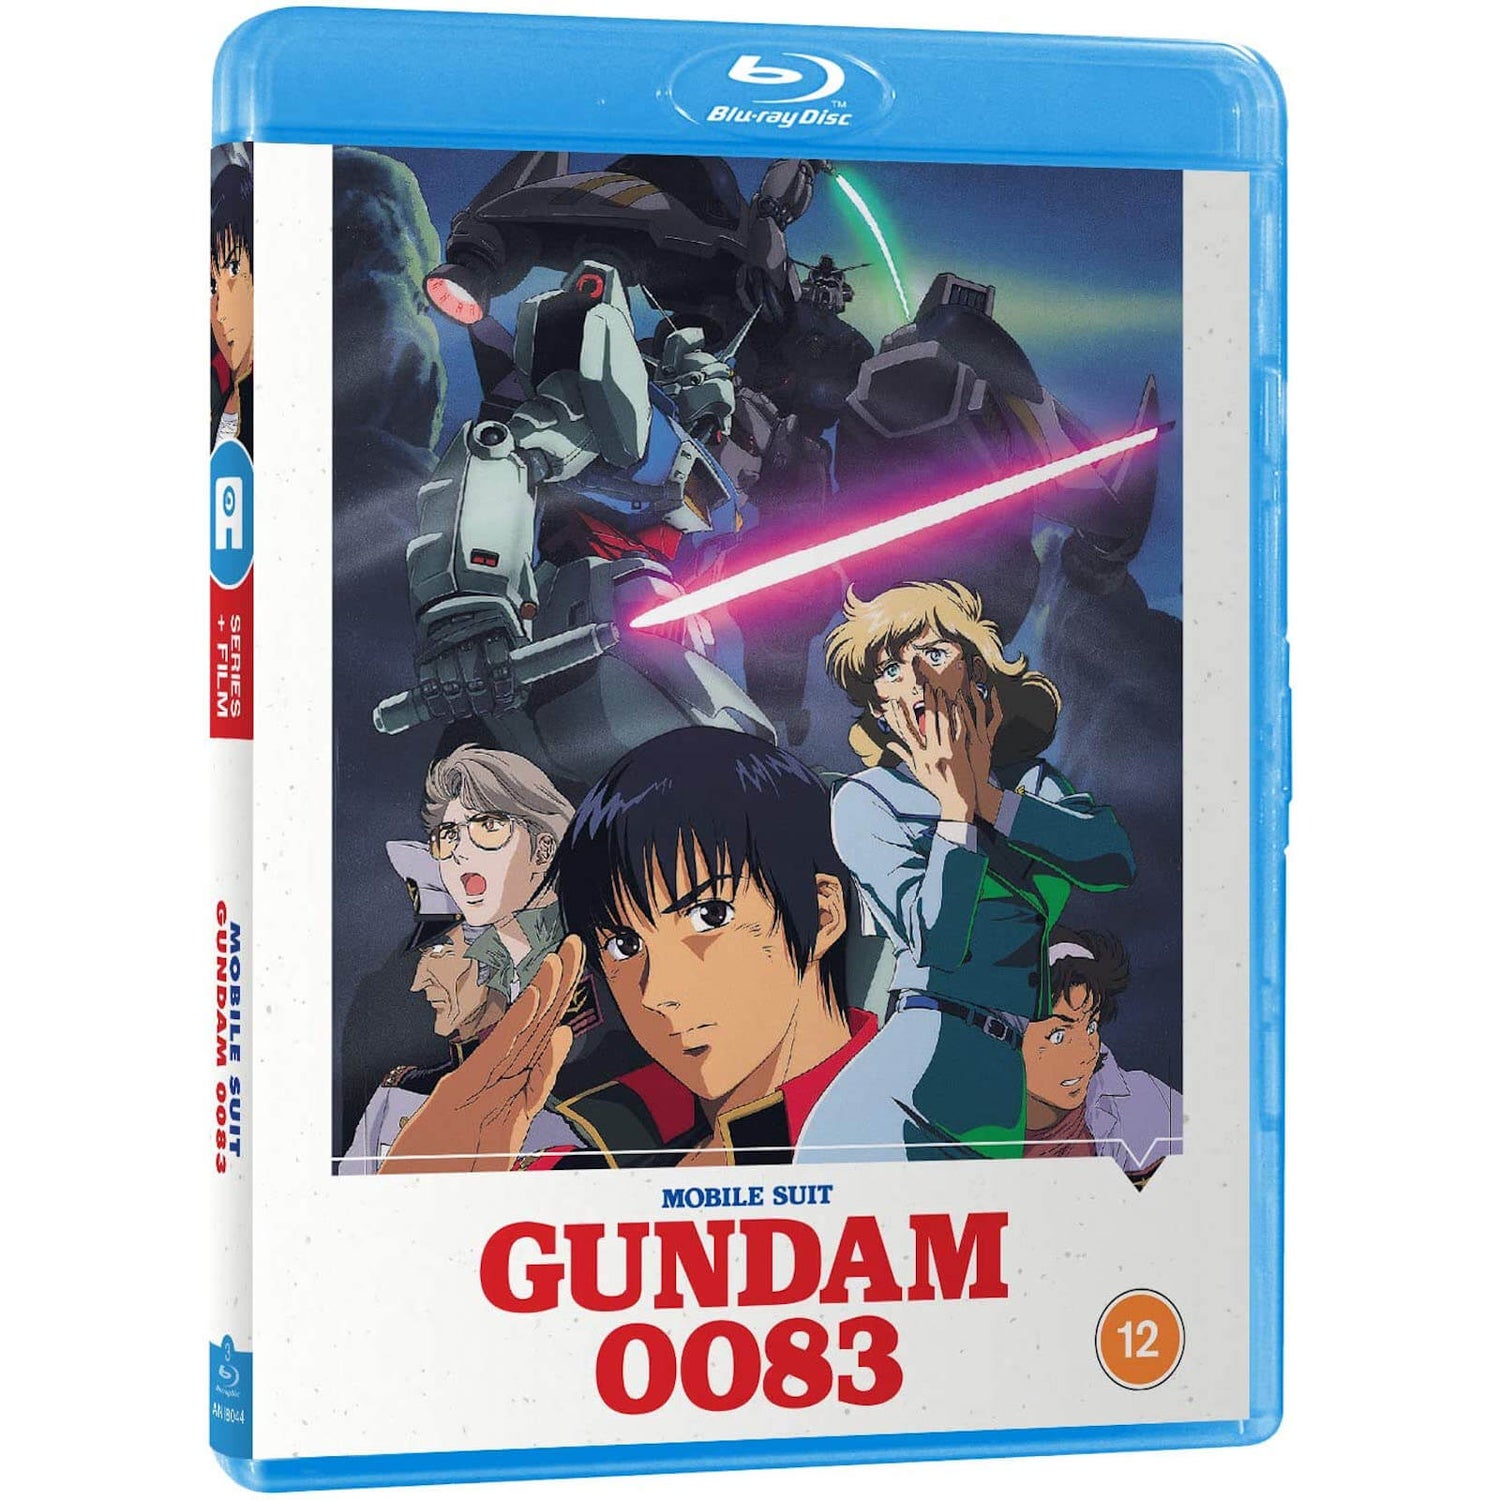 Gundam 0083 (Standaard Editie)